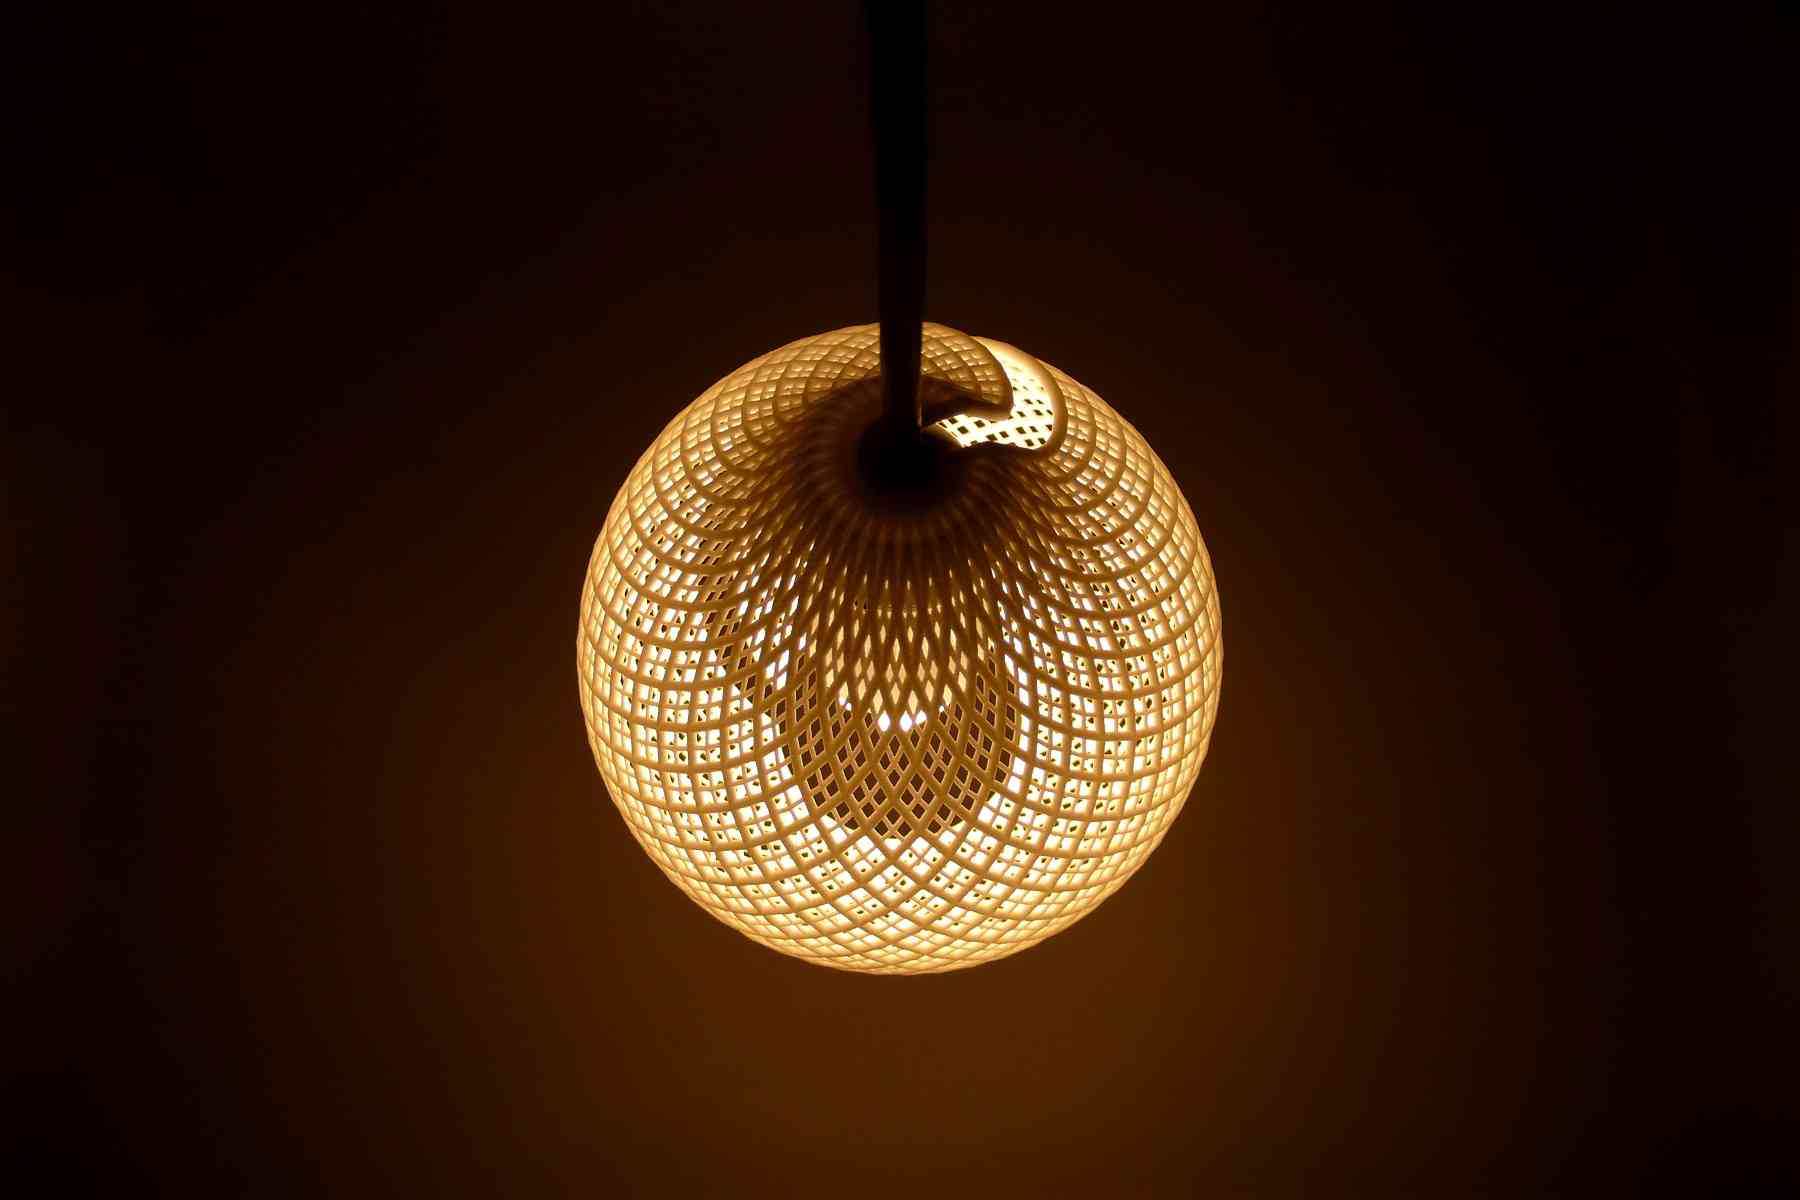 Rentaro Nishimura: SLS 3D printing lighting - Lampshade made of nylon using SLS 3D printing process.